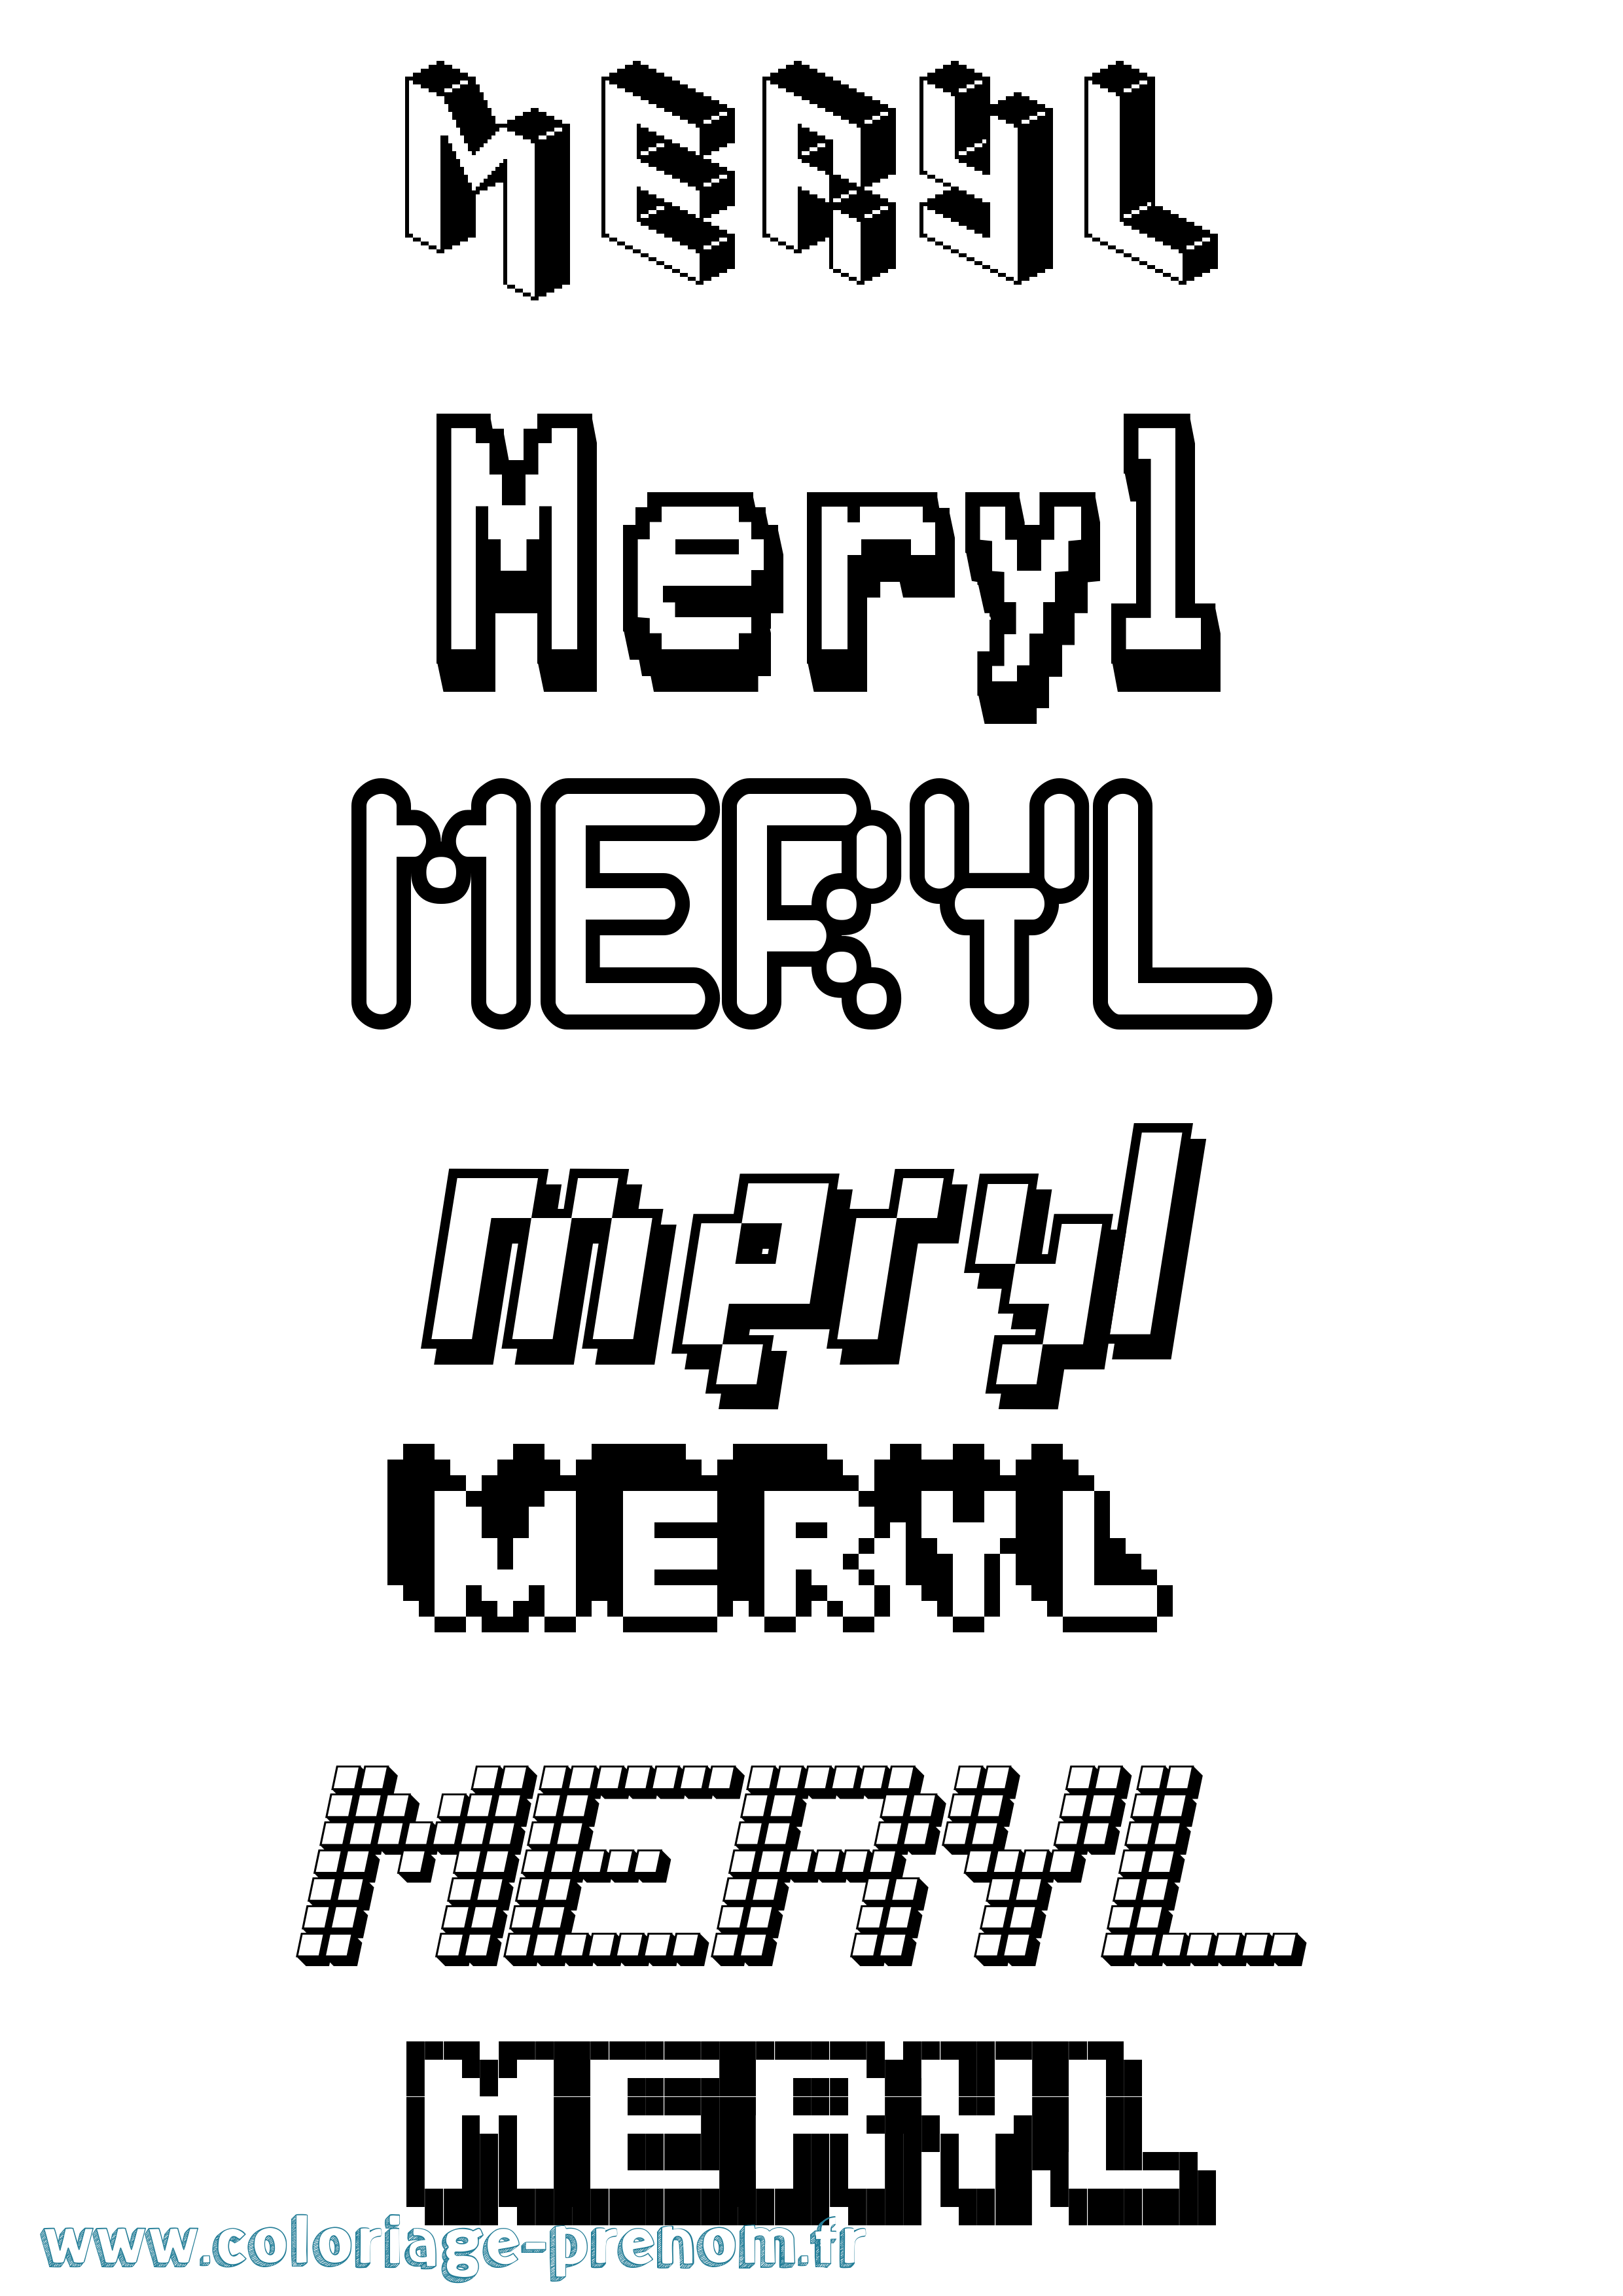 Coloriage prénom Meryl